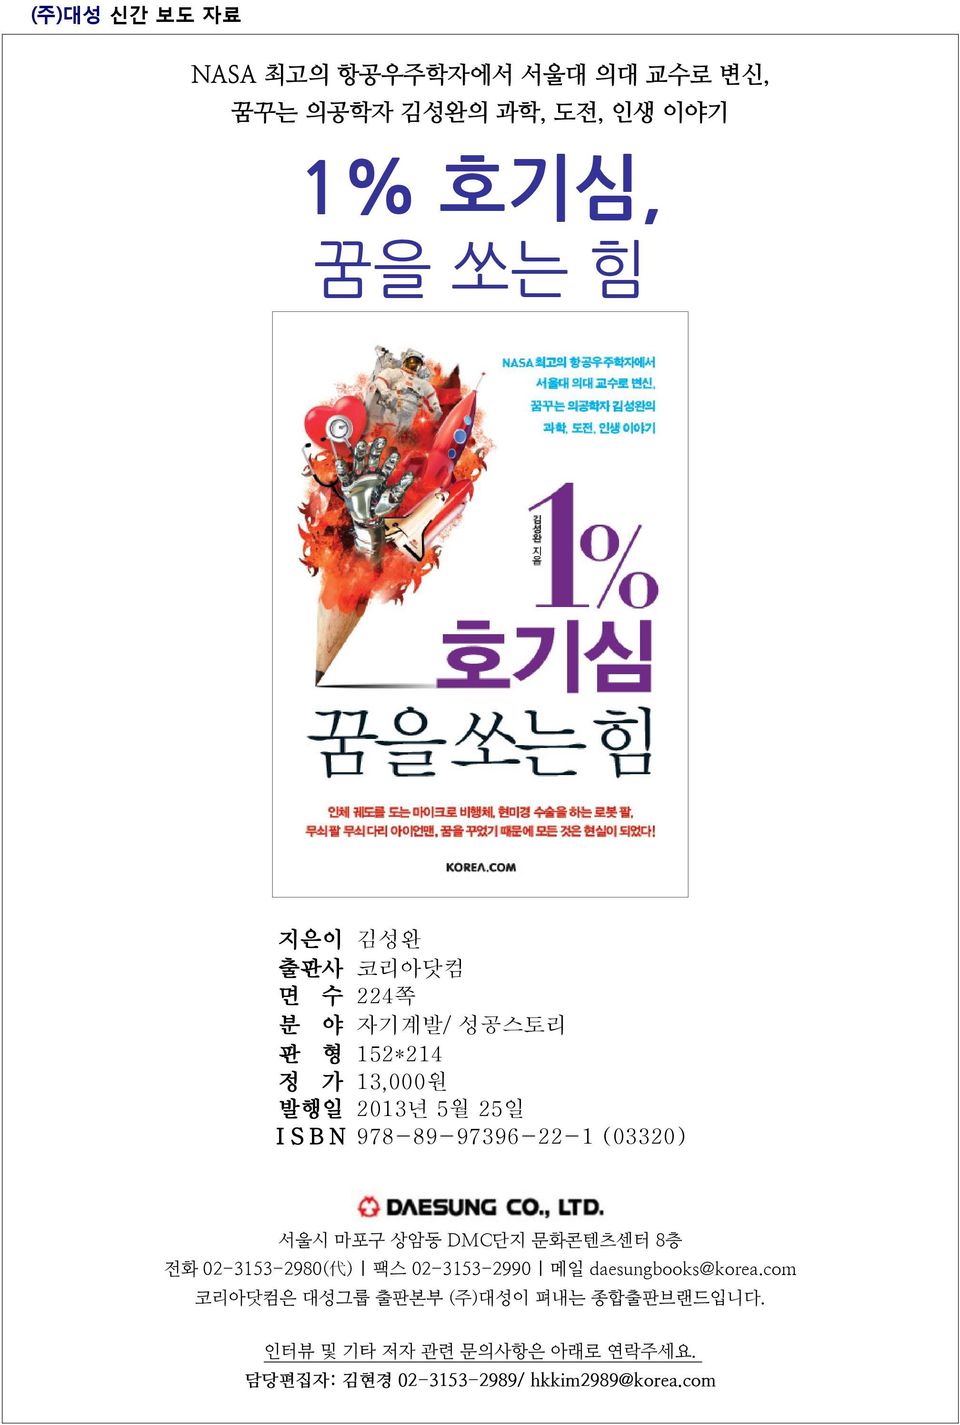 마포구 상암동 DMC단지 문화콘텐츠센터 8층 전화 02-3153-2980( 代 ) 팩스 02-3153-2990 메일 daesungbooks@korea.